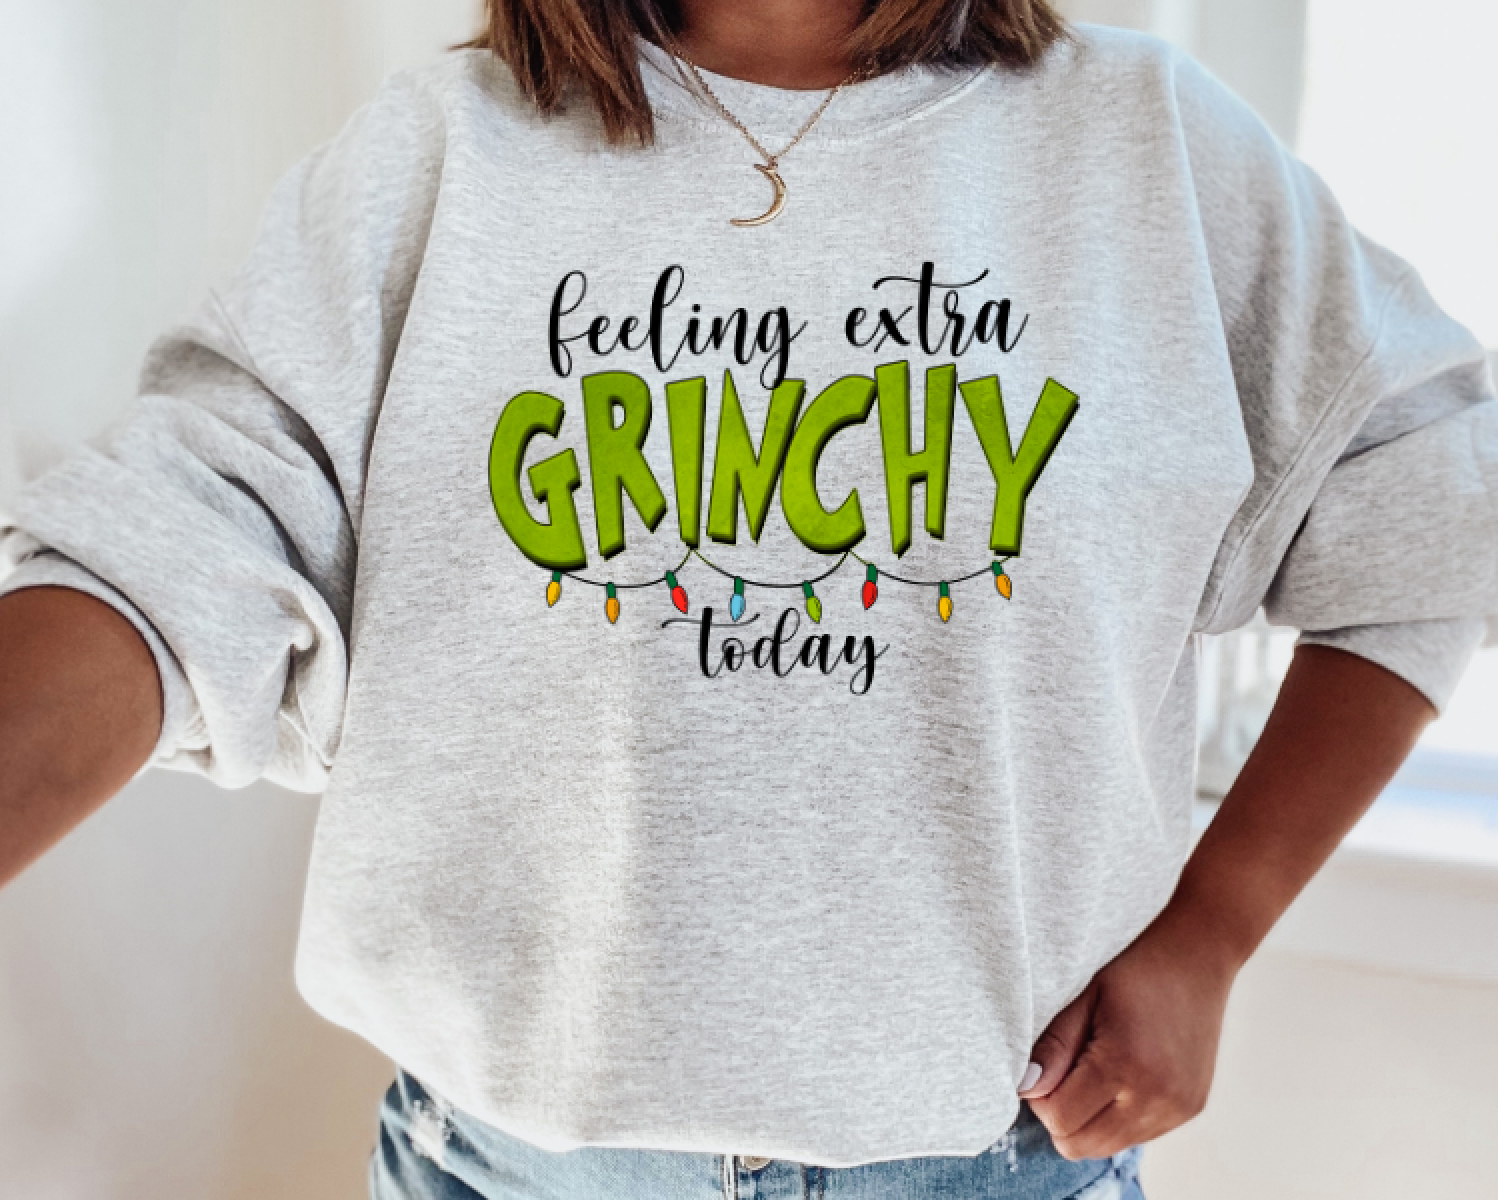 Extra Grinchy crewneck sweatshirt